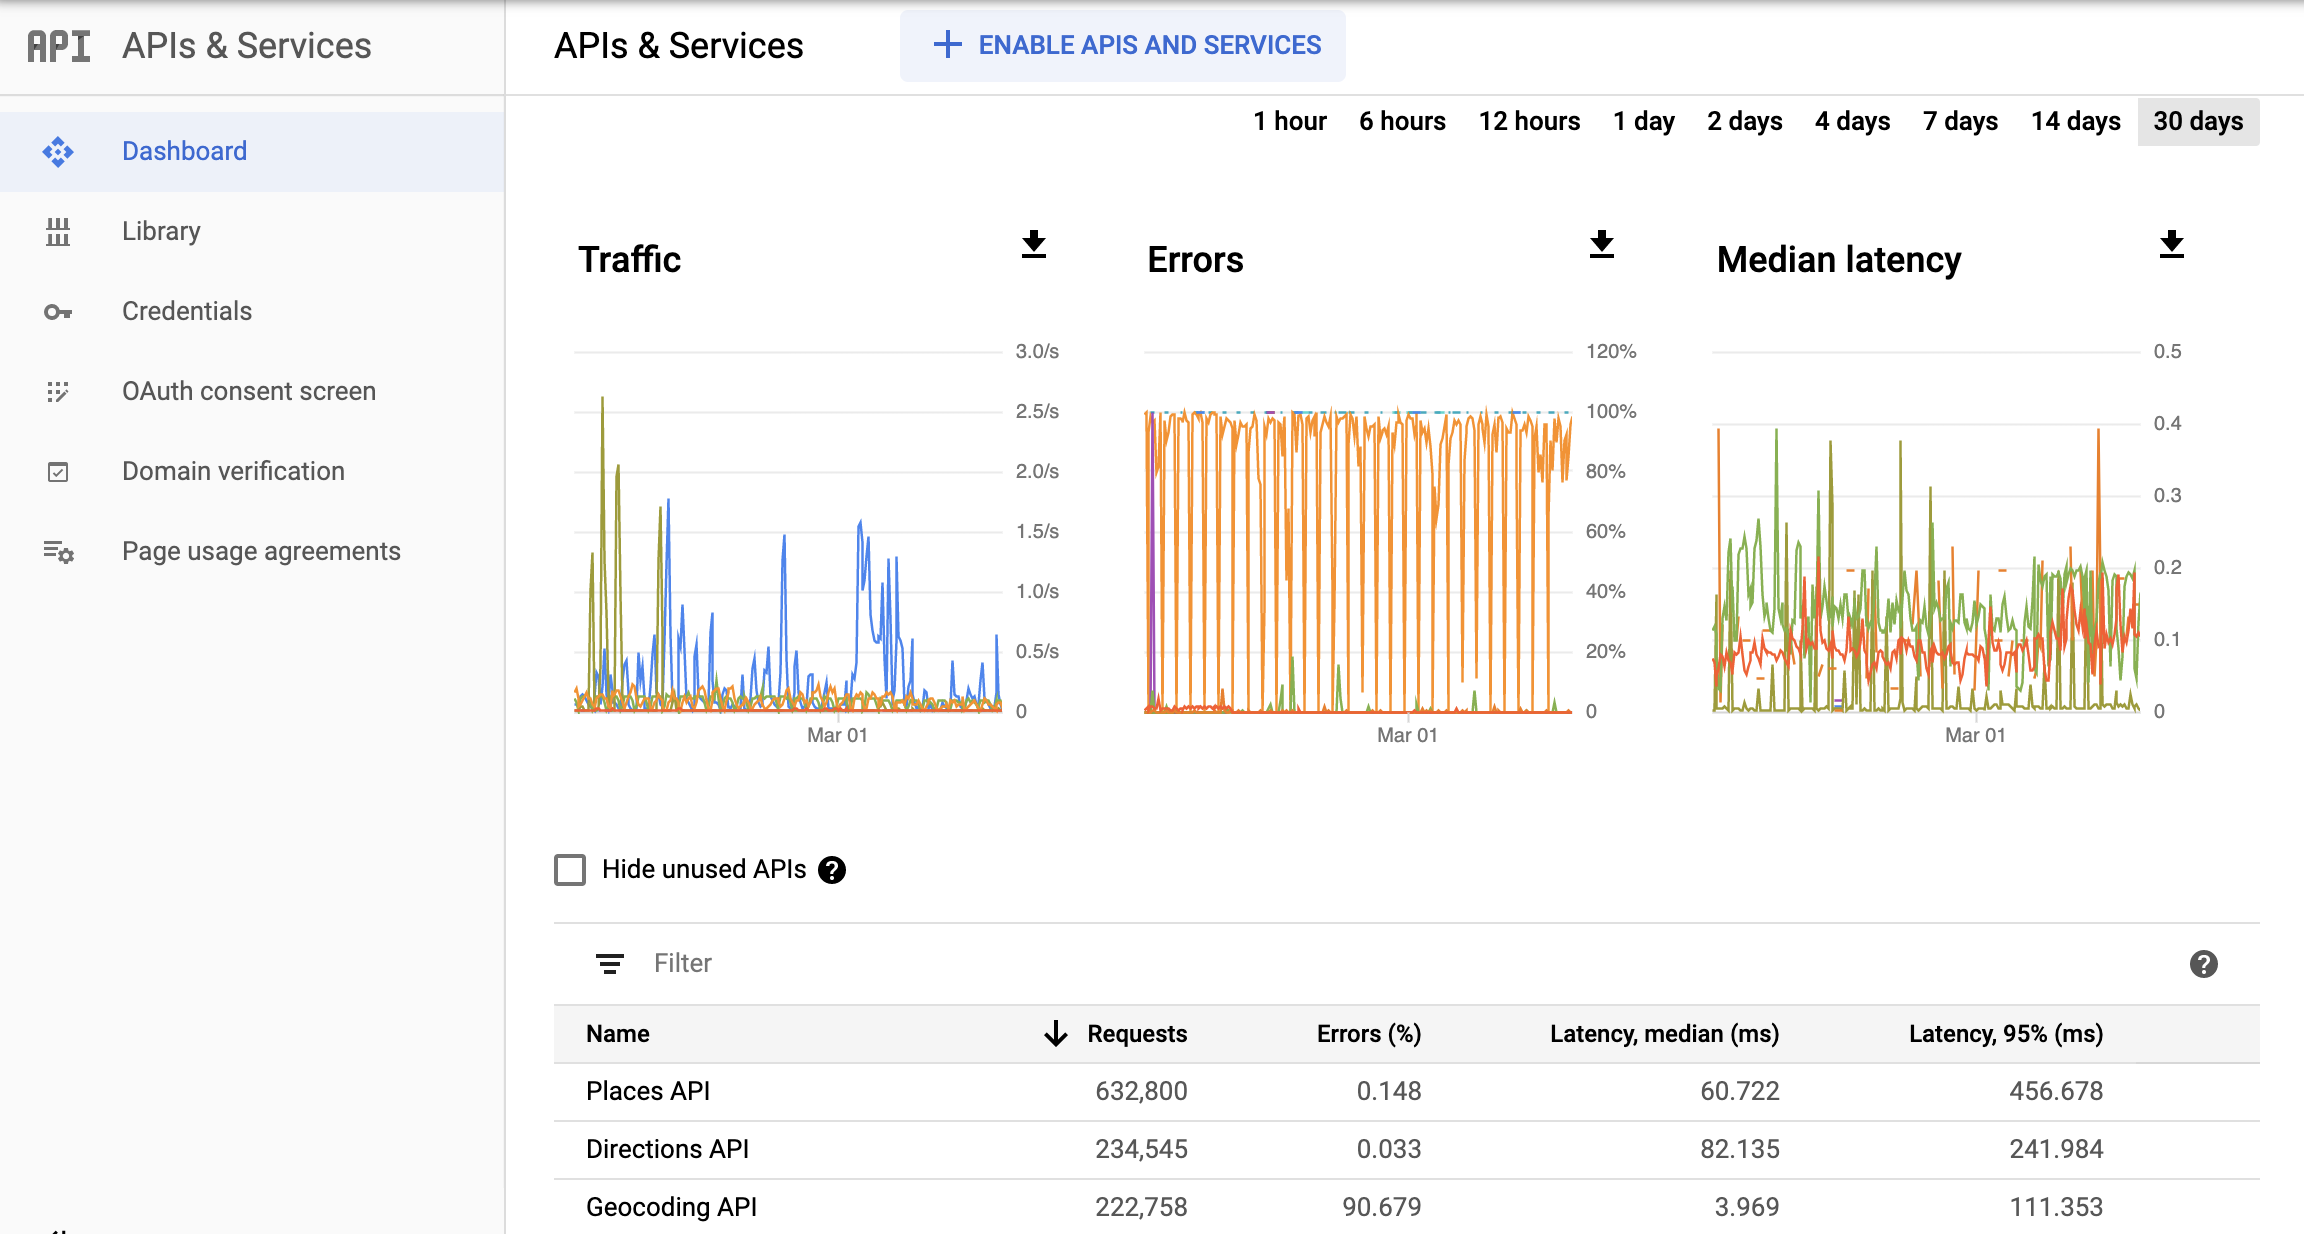 Captura de pantalla de la página APIs de Monitoring en la consola de Google Cloud, que muestra el panel de informes APIs y servicios (APIs & Services). Muestra gráficos separados de Tráfico (Traffic), Errores (Errors) y Latencia mediana (Median Latency). Estos gráficos pueden mostrar los datos correspondientes a períodos de entre una hora y 30 días.